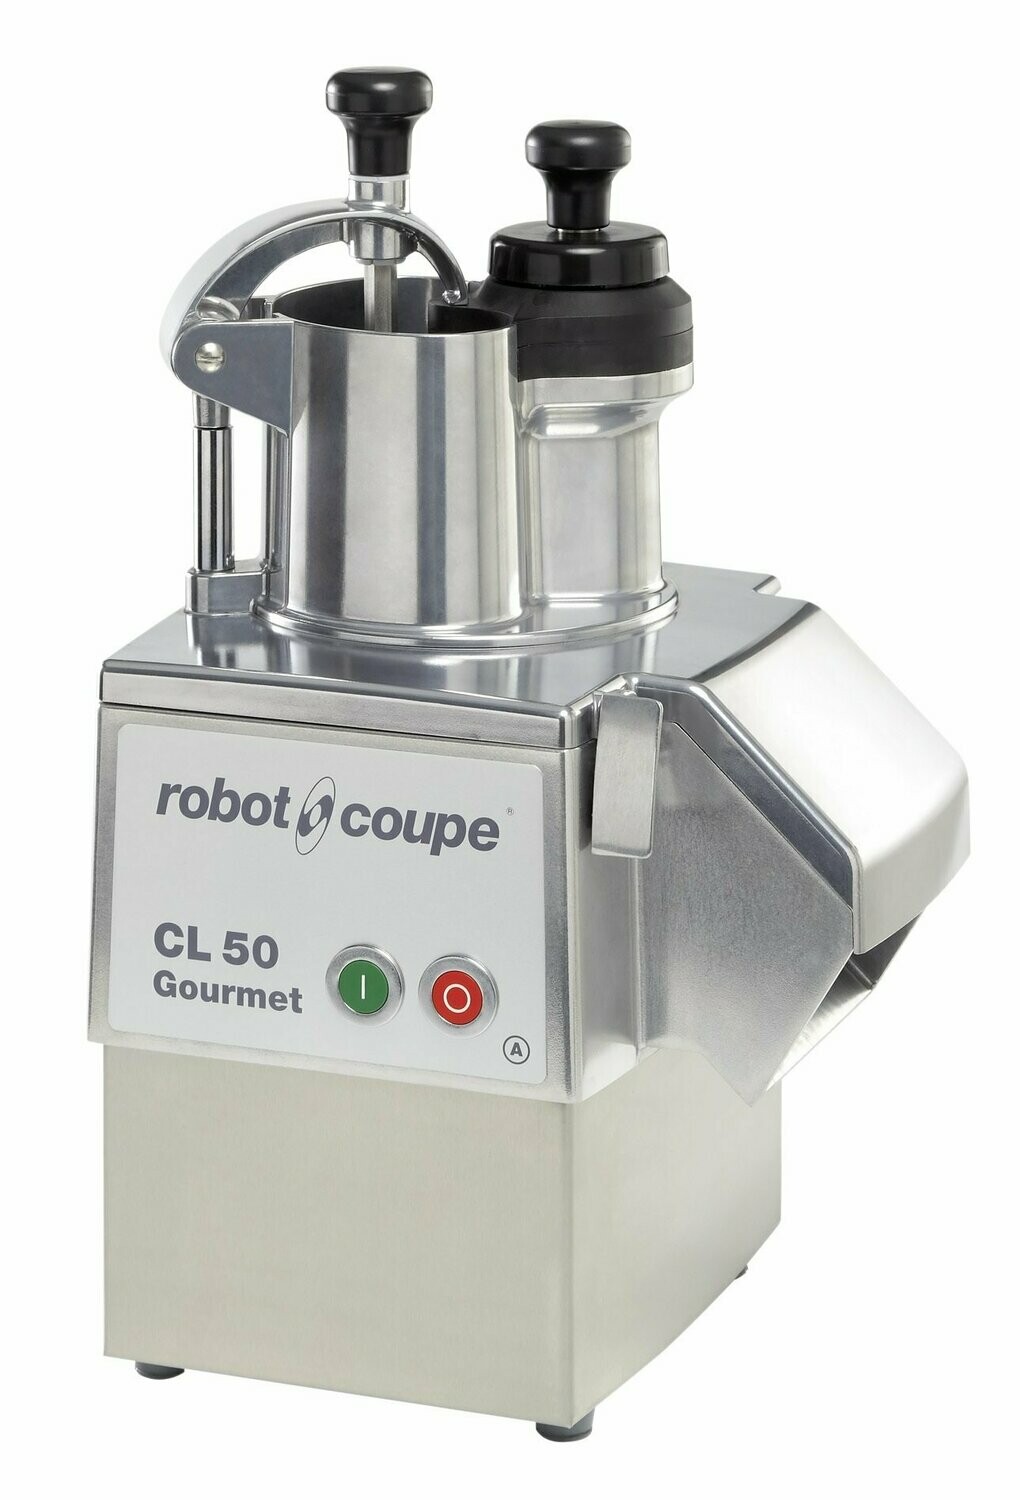 Robot Coupe CL50 Gourmet 230V - No discs